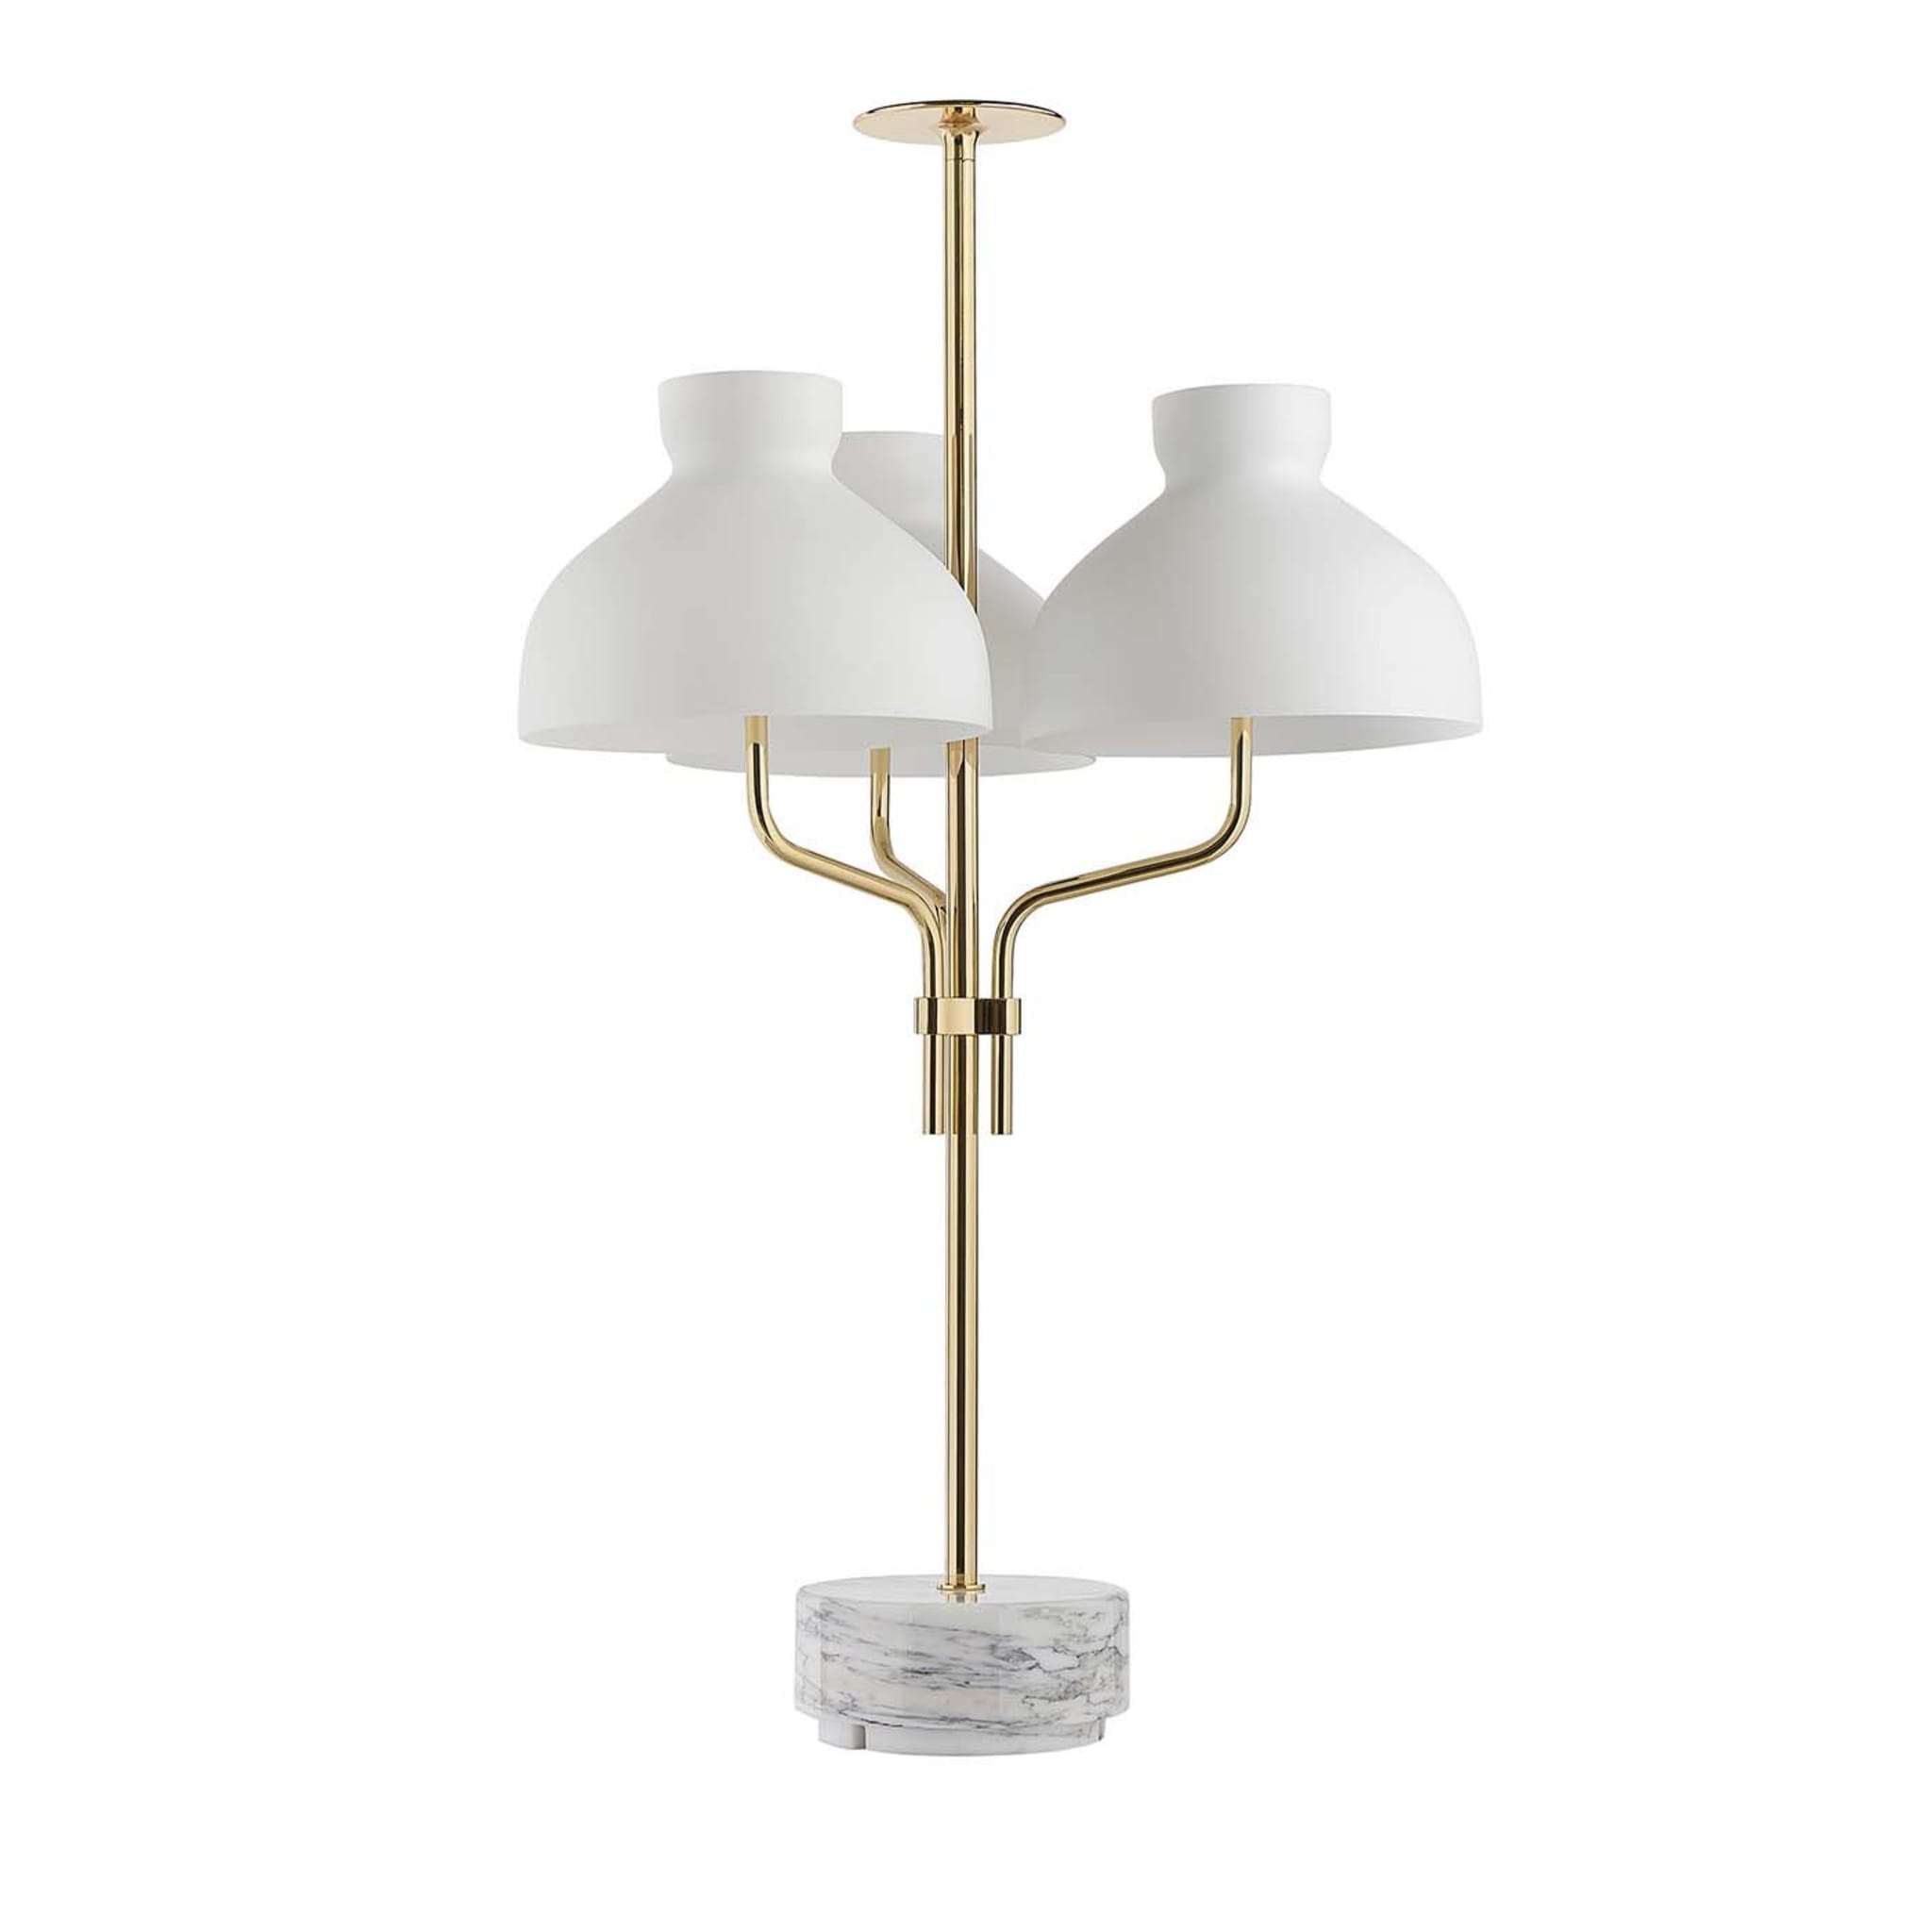 Arenzano Tre Fiamme Table Lamp by Ignazio Gardella - Main view